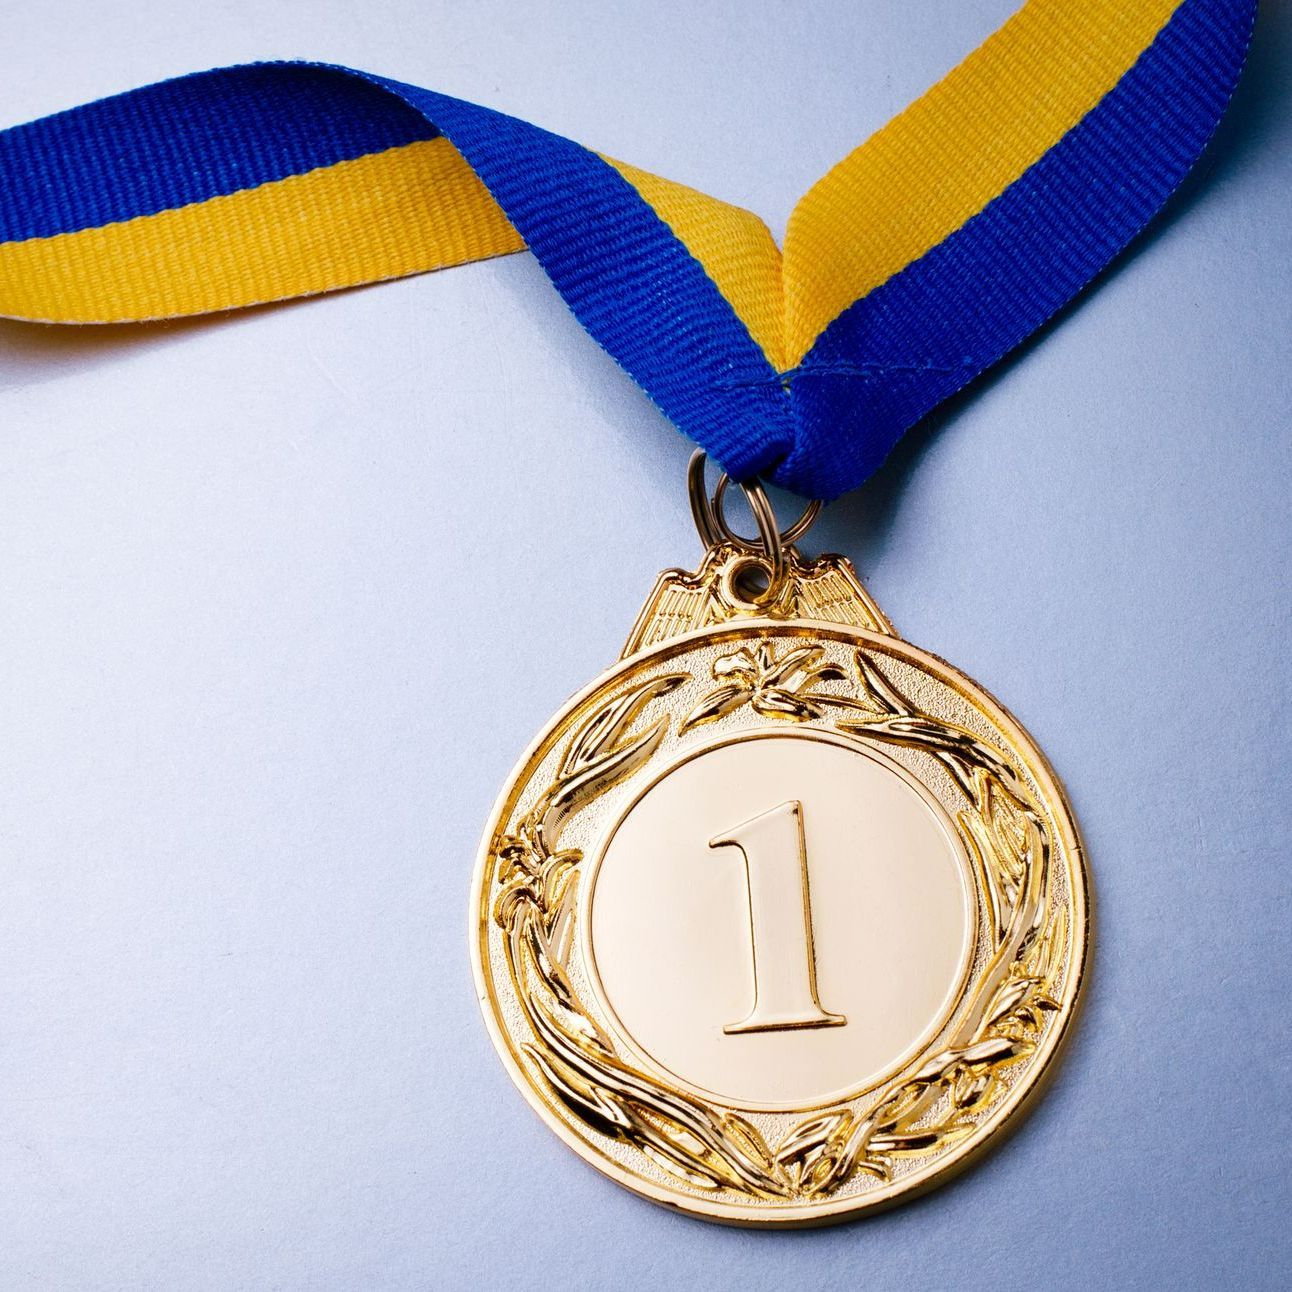 Médaille avec ruban bleu et jaune